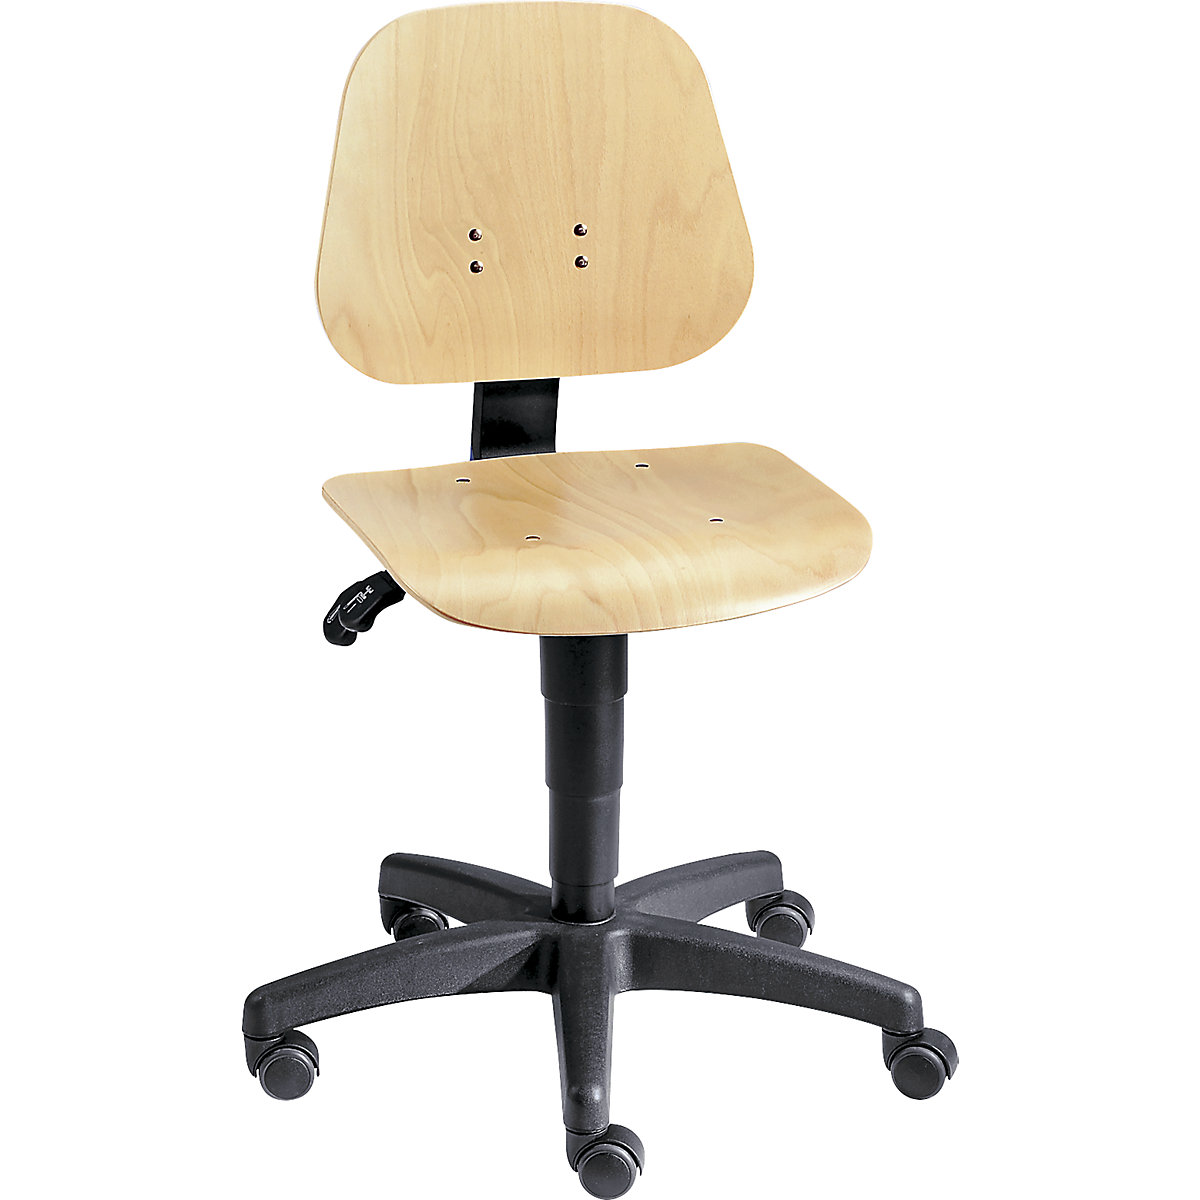 Okretni radni stolac – bimos, s namještanjem visine pomoću plinske opruge, slojevito drvo bukve, s kotačima, od 3 kom.-11